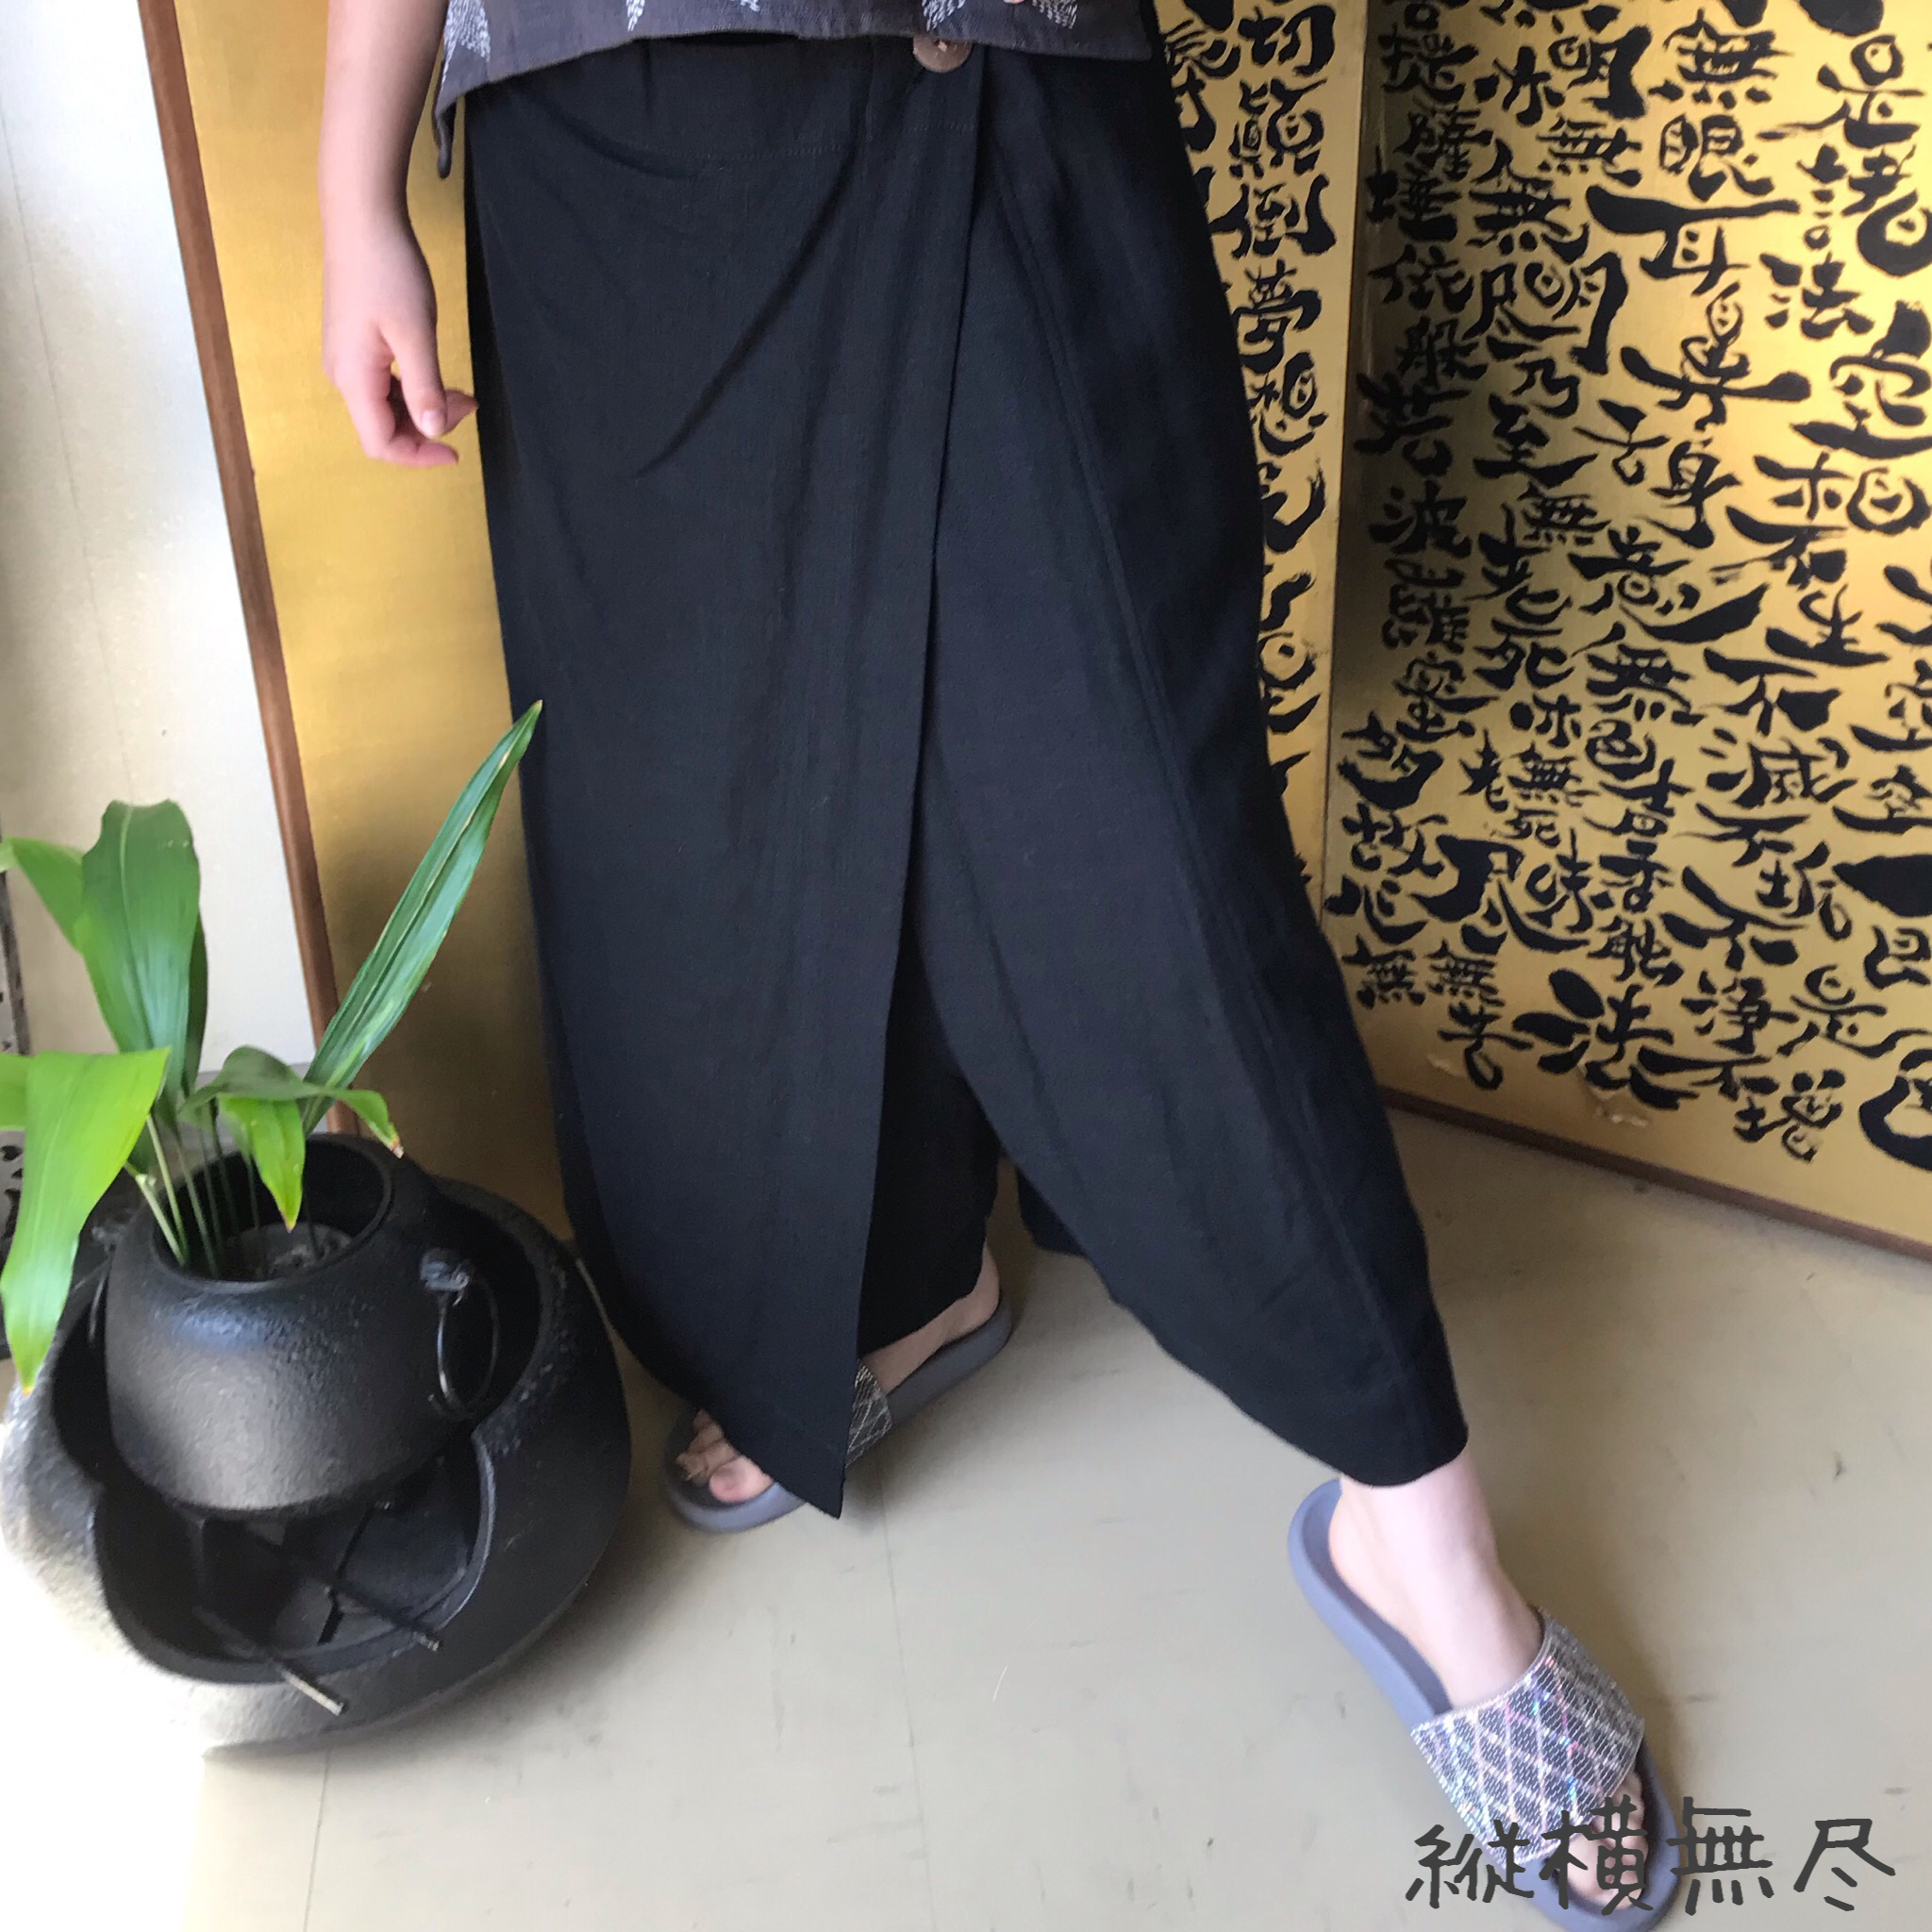 シルエットが綺麗な巻きスカート風ヘンプのパンツ 黒 Iichi ハンドメイド クラフト作品 手仕事品の通販